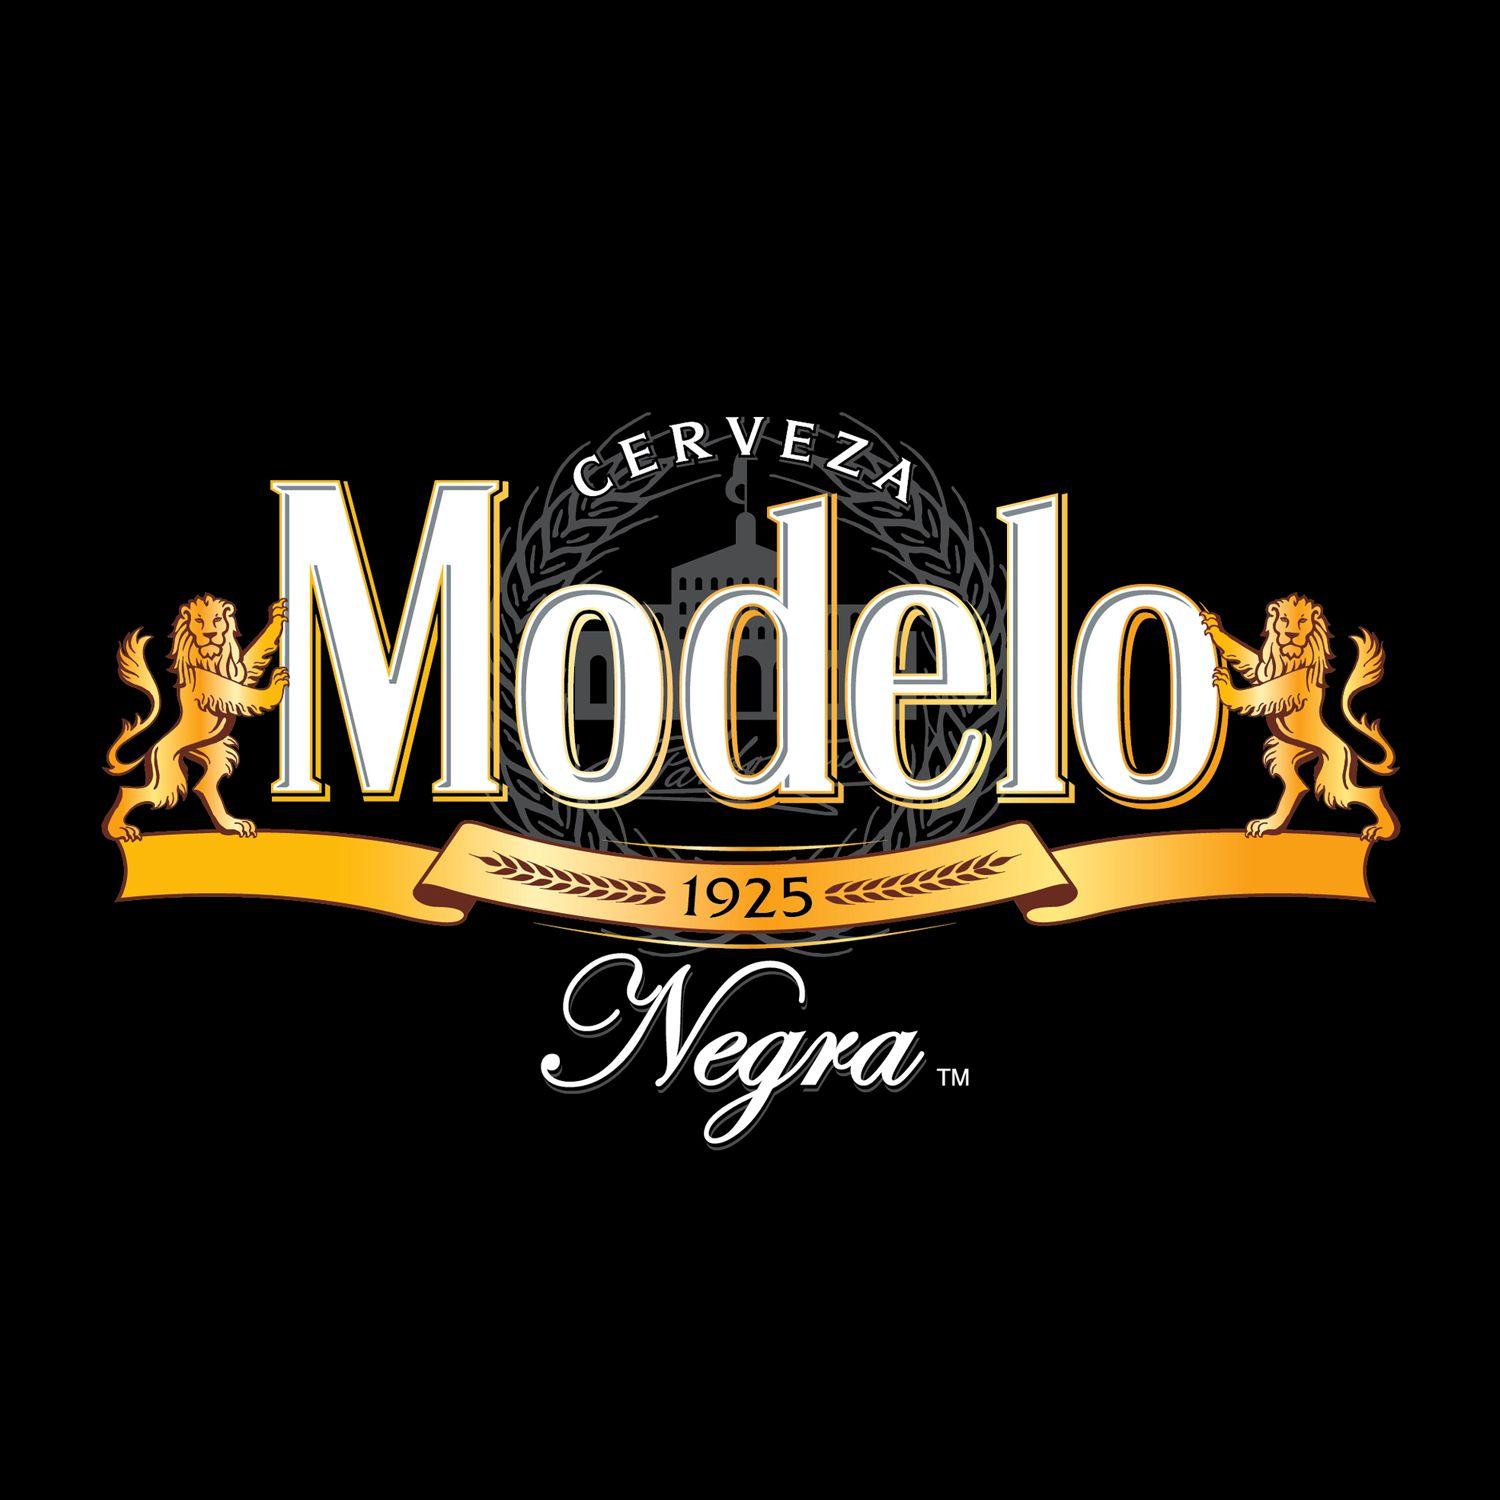 Modelo Logo - LOGOJET. Modelo Negra Logo